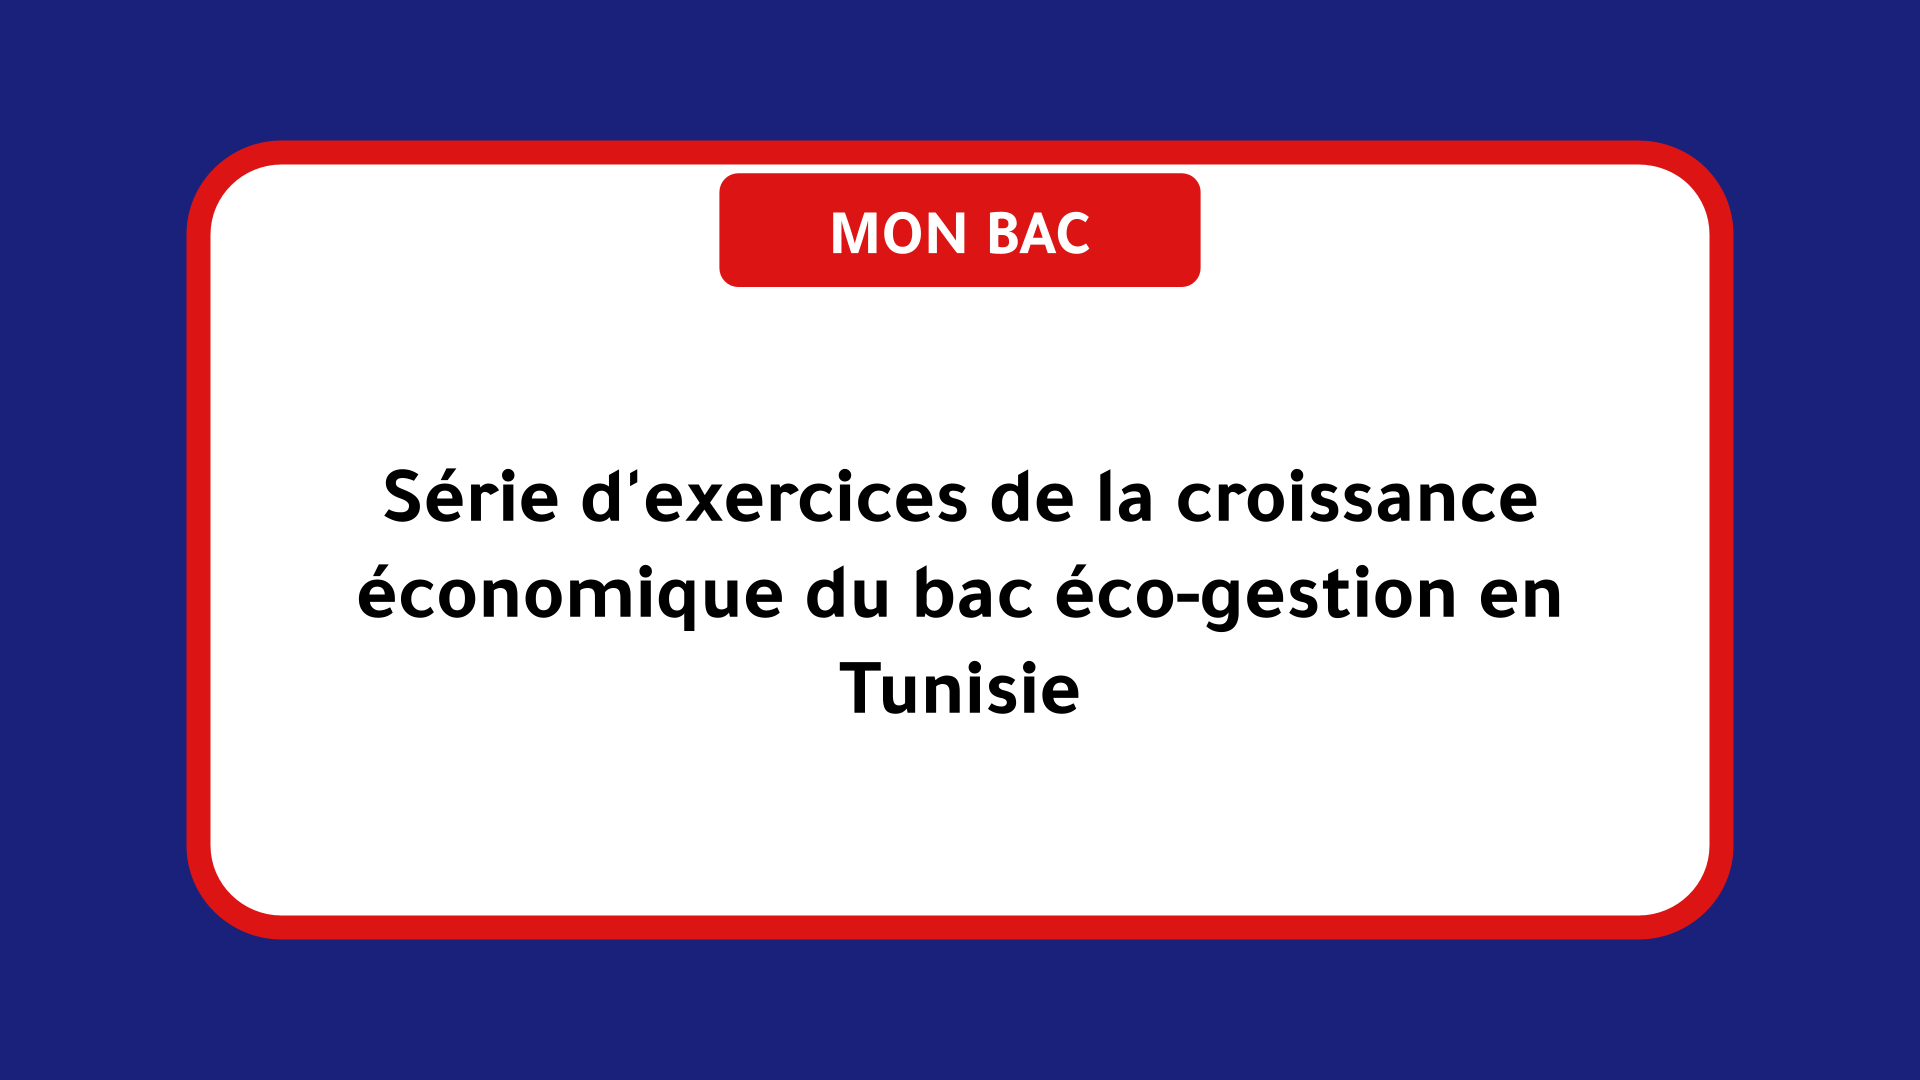 Série d'exercices de la croissance économique bac éco-gestion Tunisie